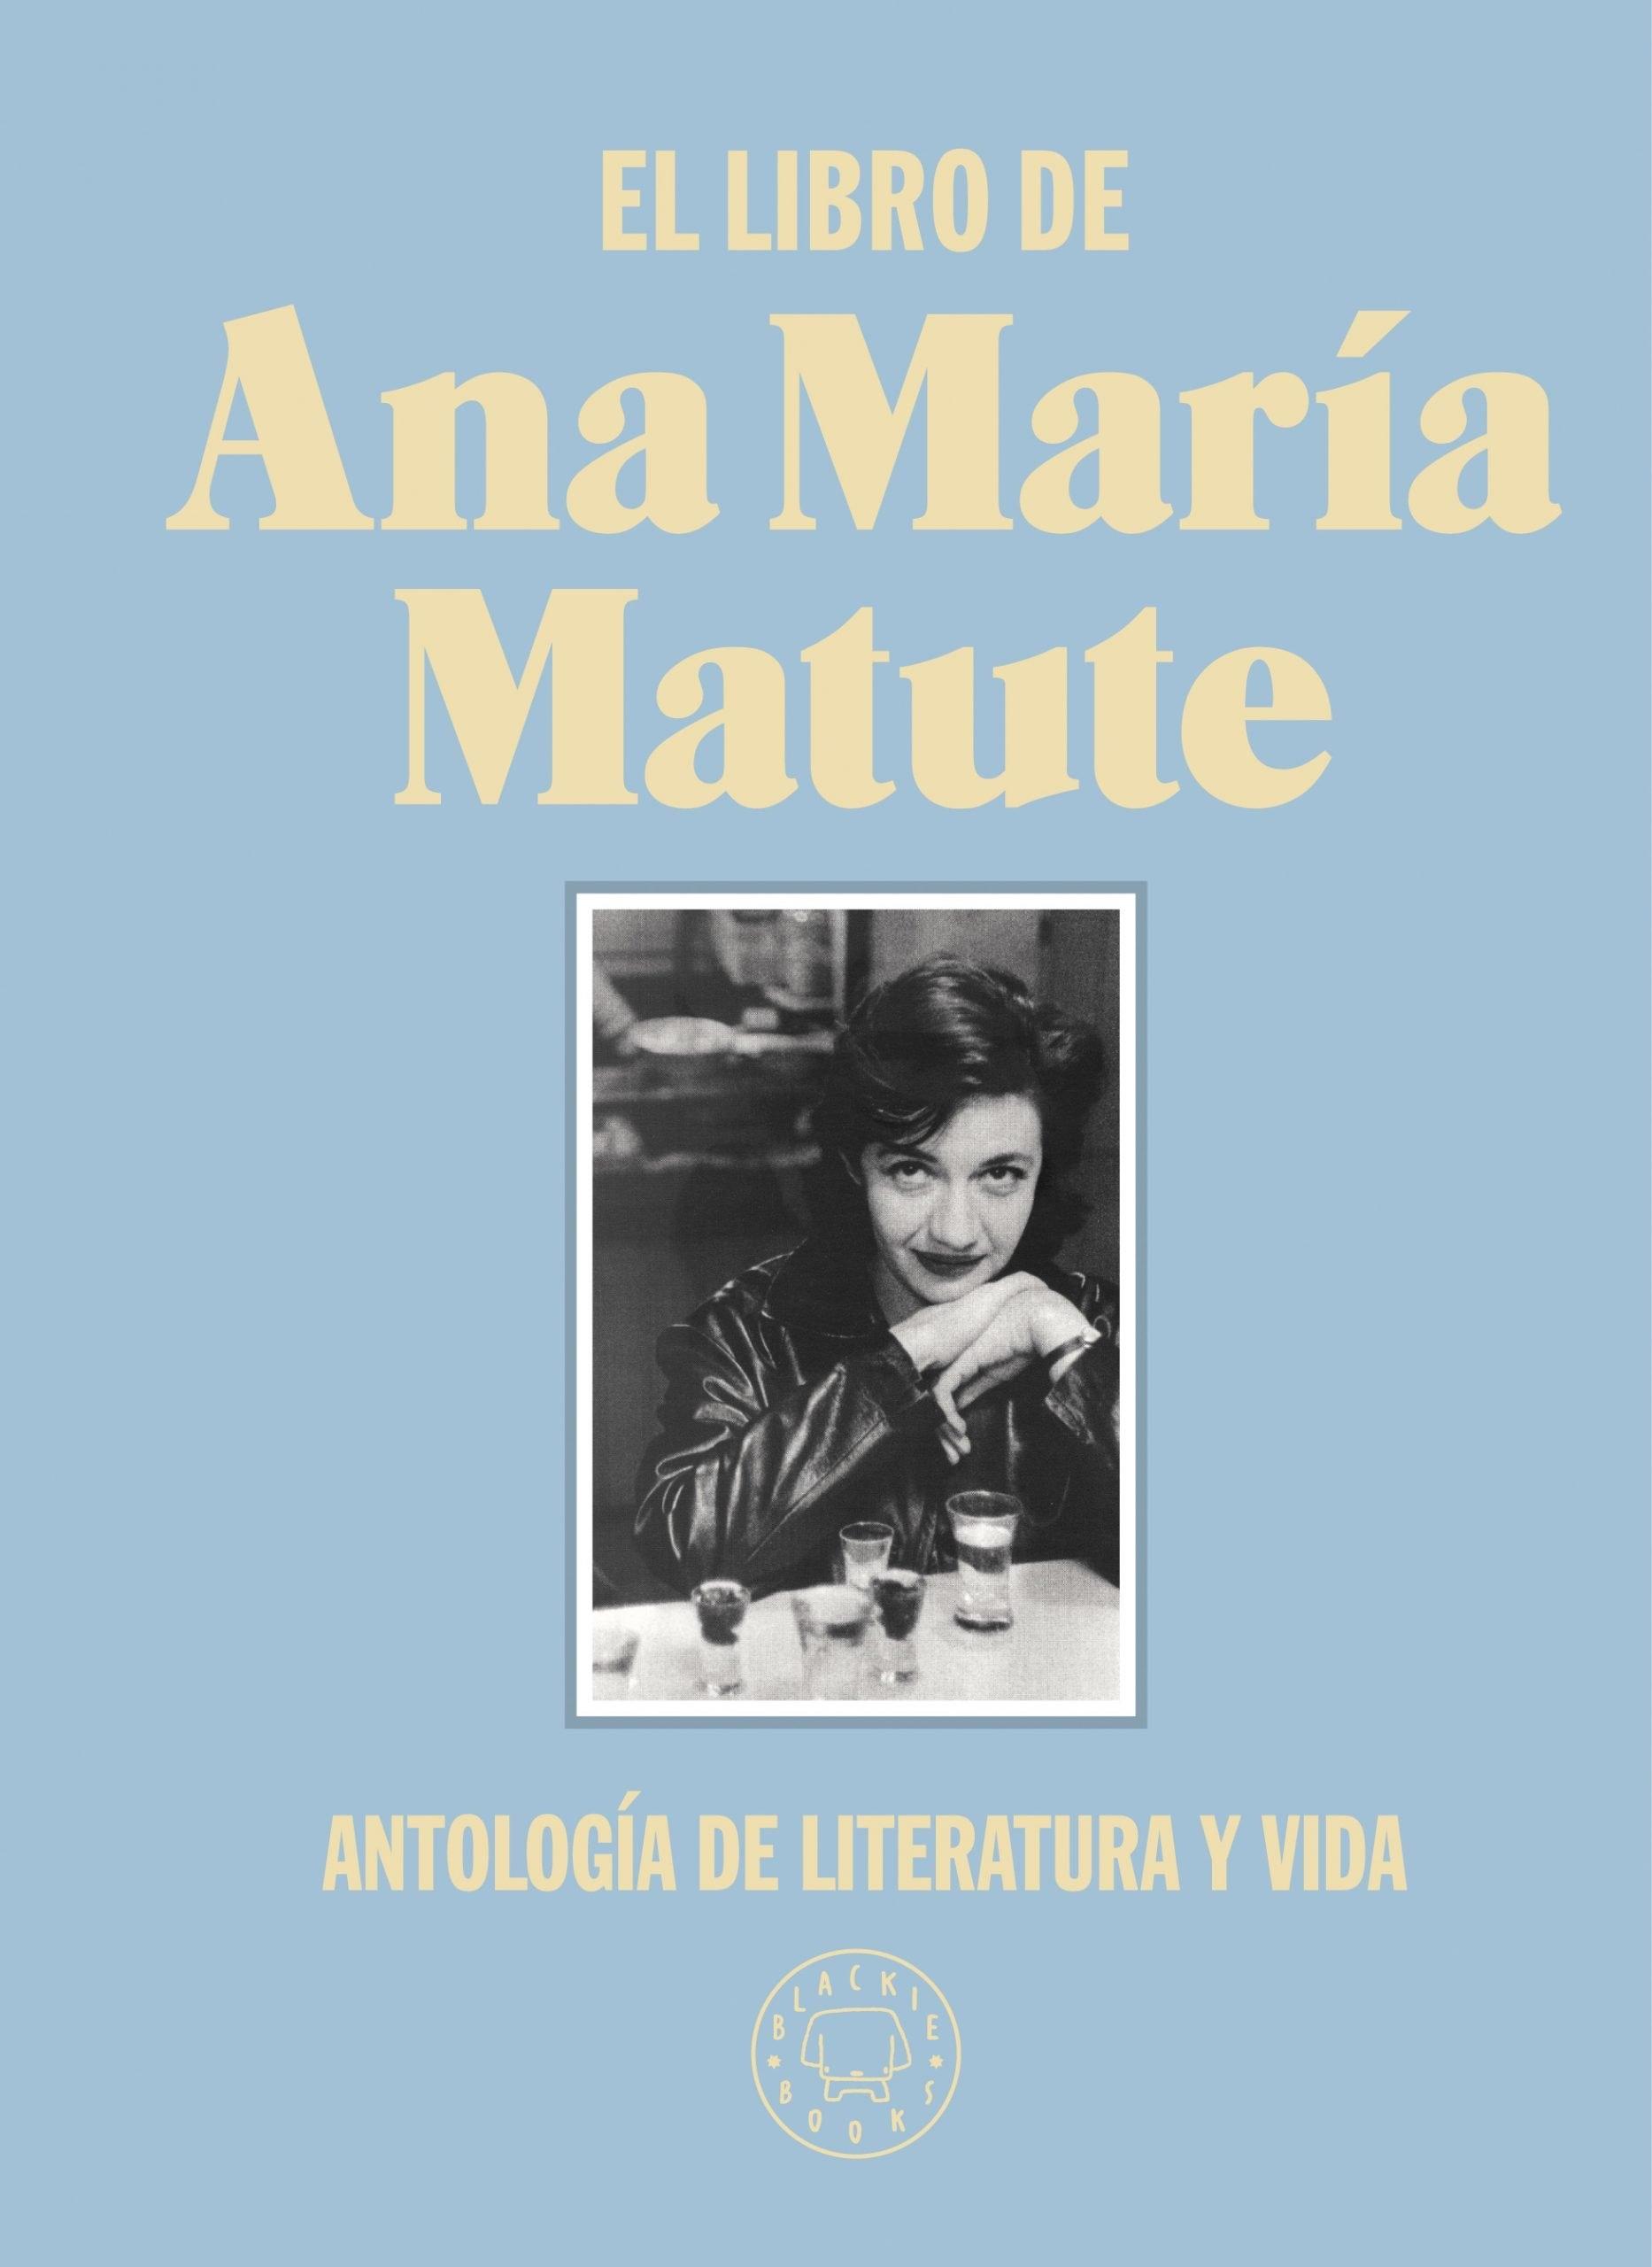 El Libro de Ana María Matute "Antología de Literatura y Vida". 